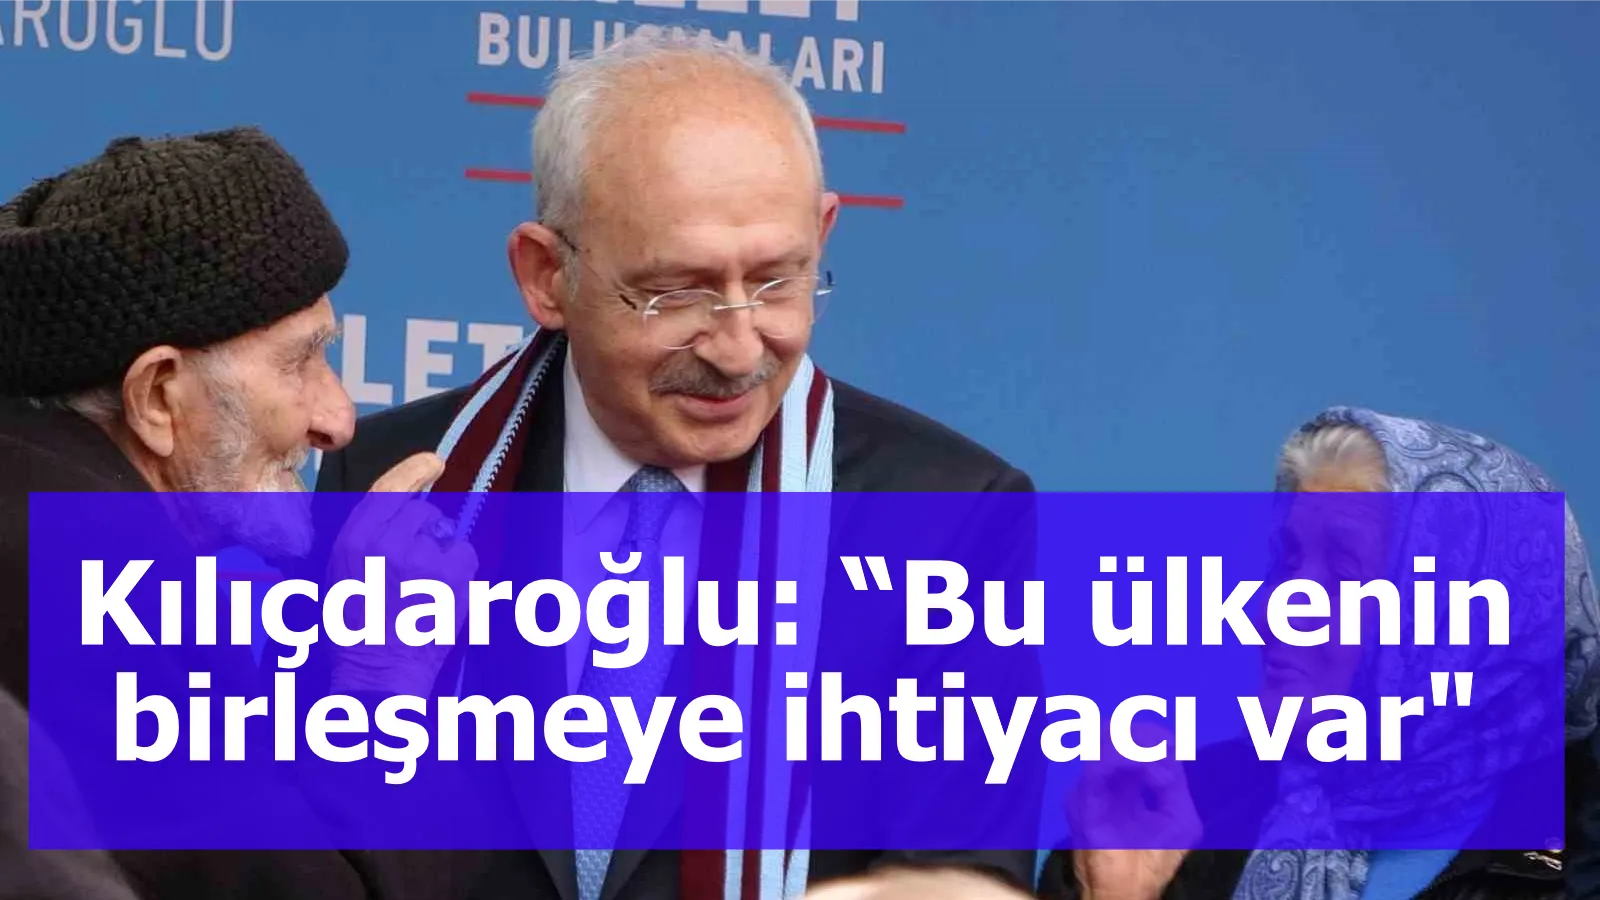 Kılıçdaroğlu: “Bu ülkenin birleşmeye ihtiyacı var"